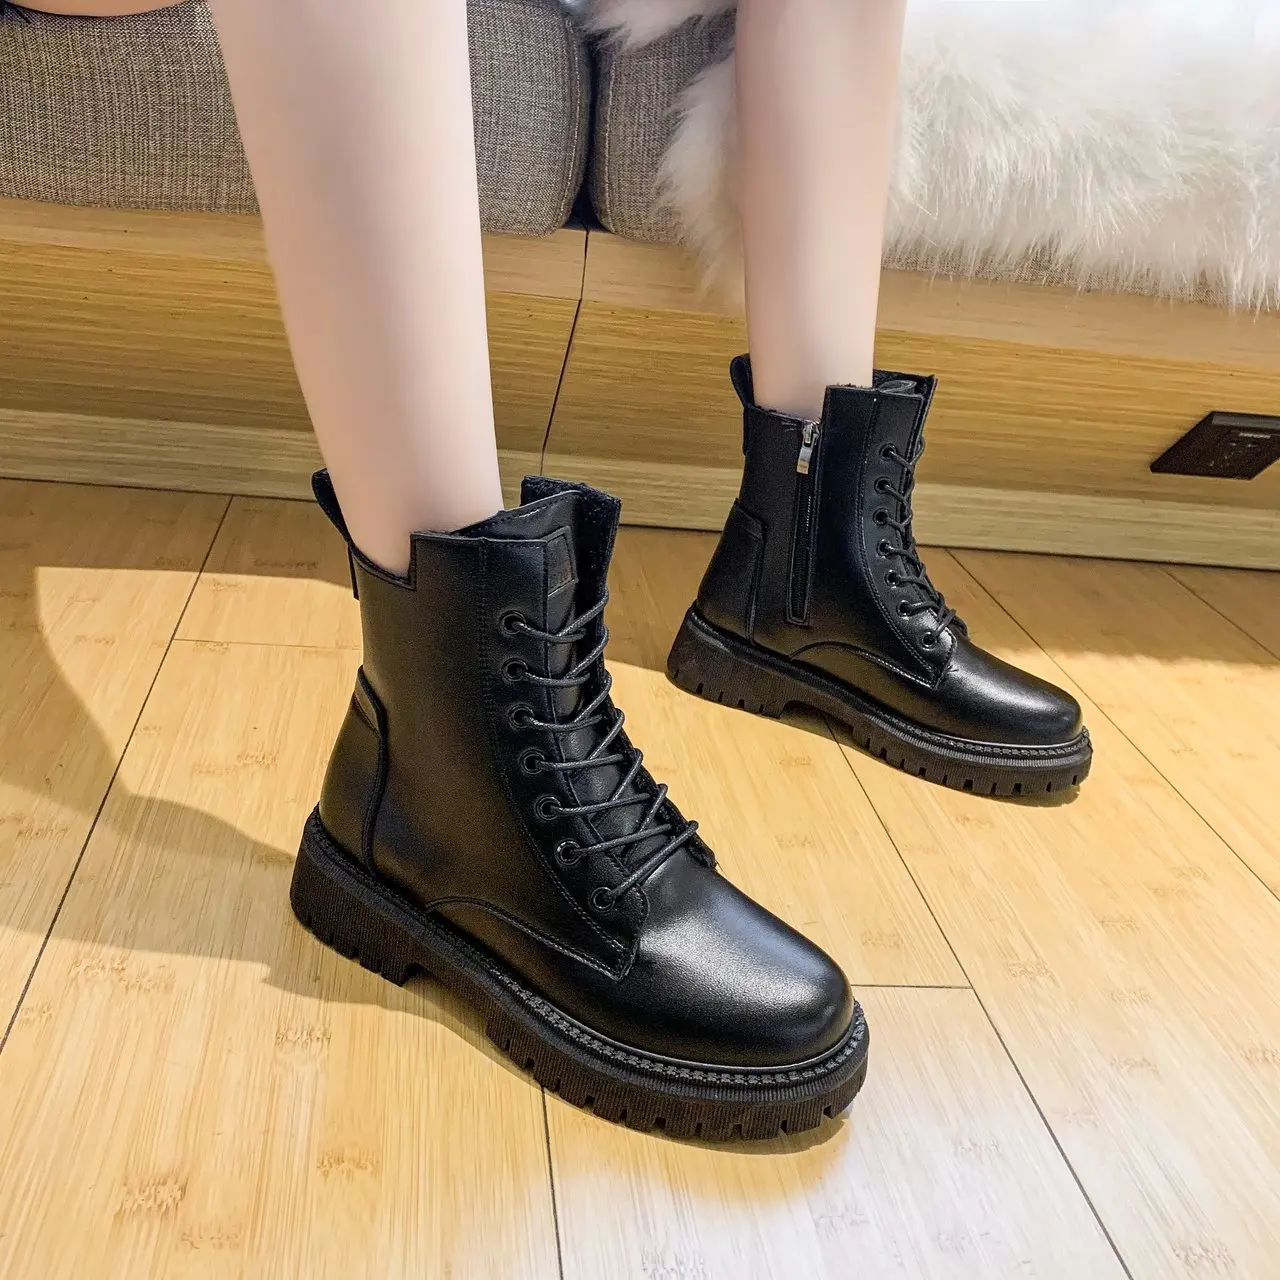 

Женские ботинки со шнуровкой WHNB, черные или коричневые короткие ботинки на толстой подошве, на квадратном каблуке, зимние теплые ботинки на ...